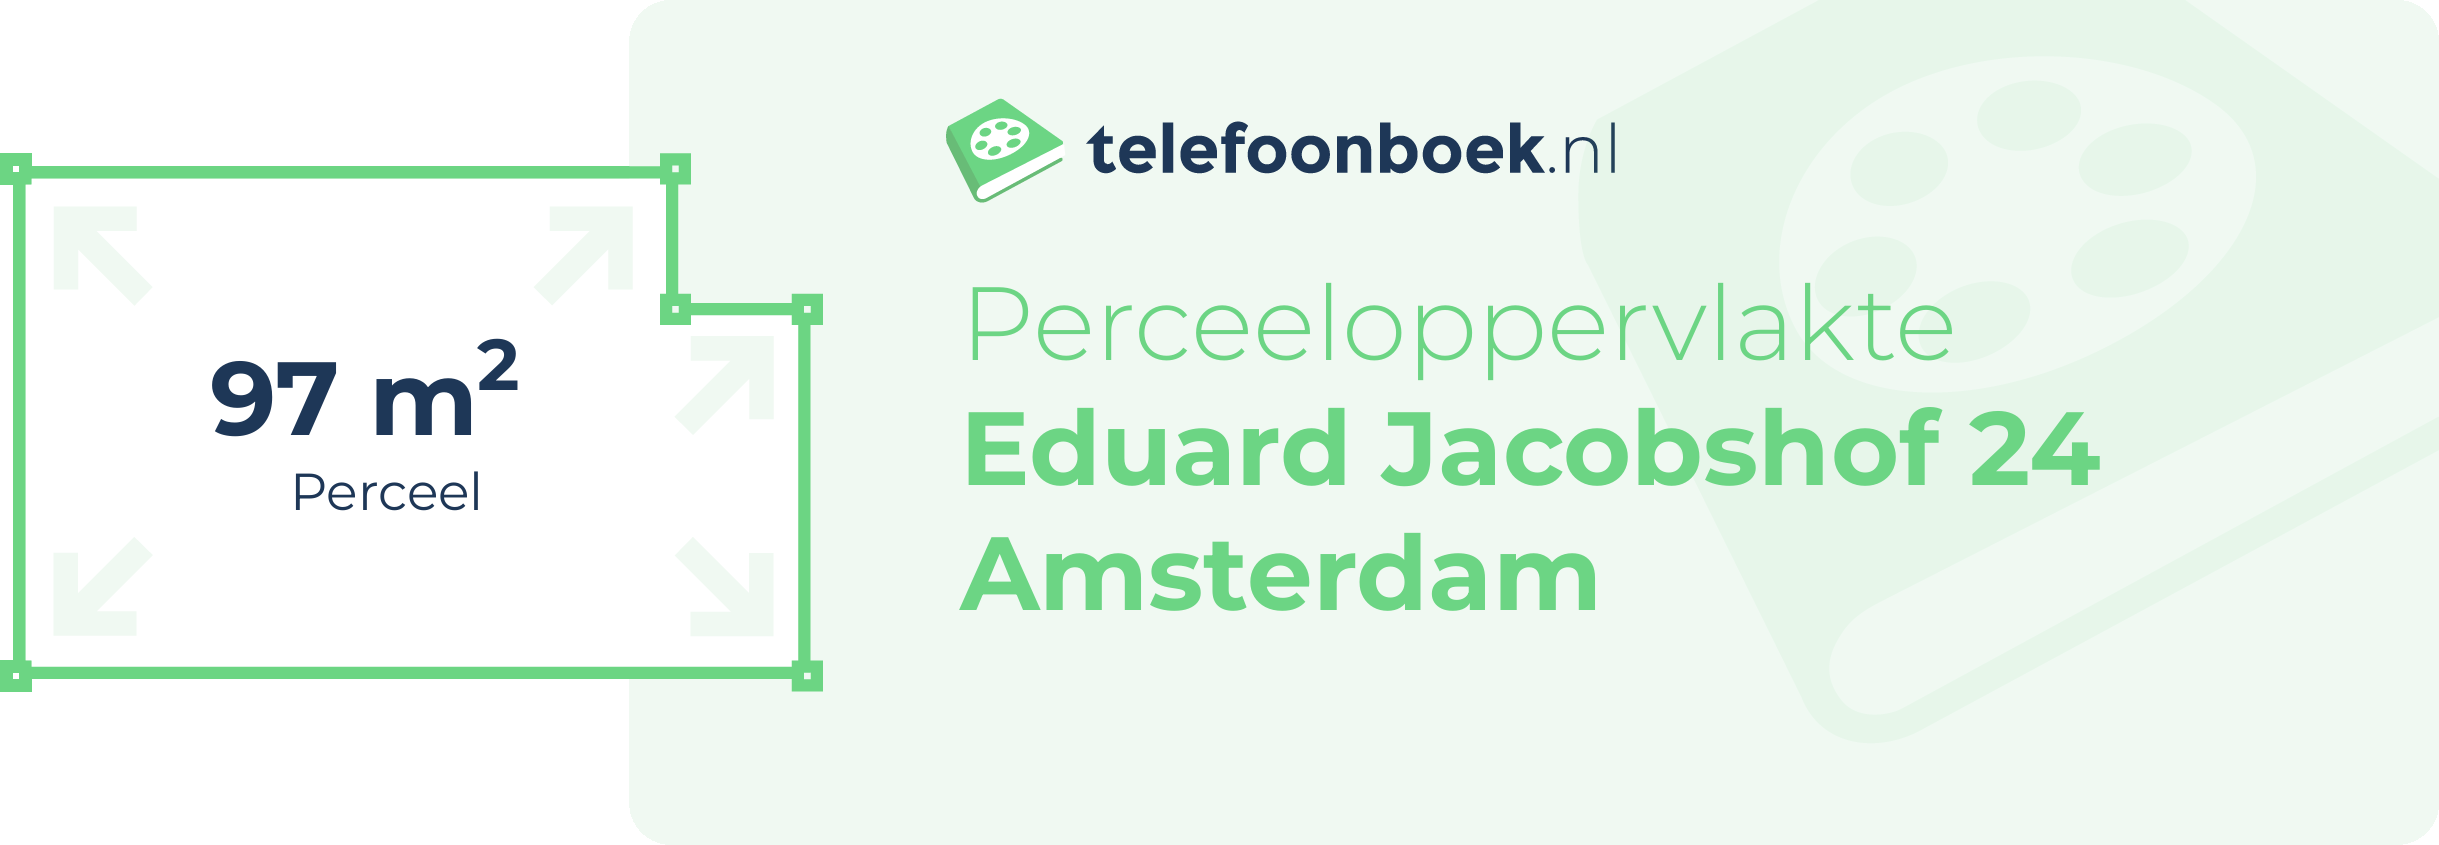 Perceeloppervlakte Eduard Jacobshof 24 Amsterdam